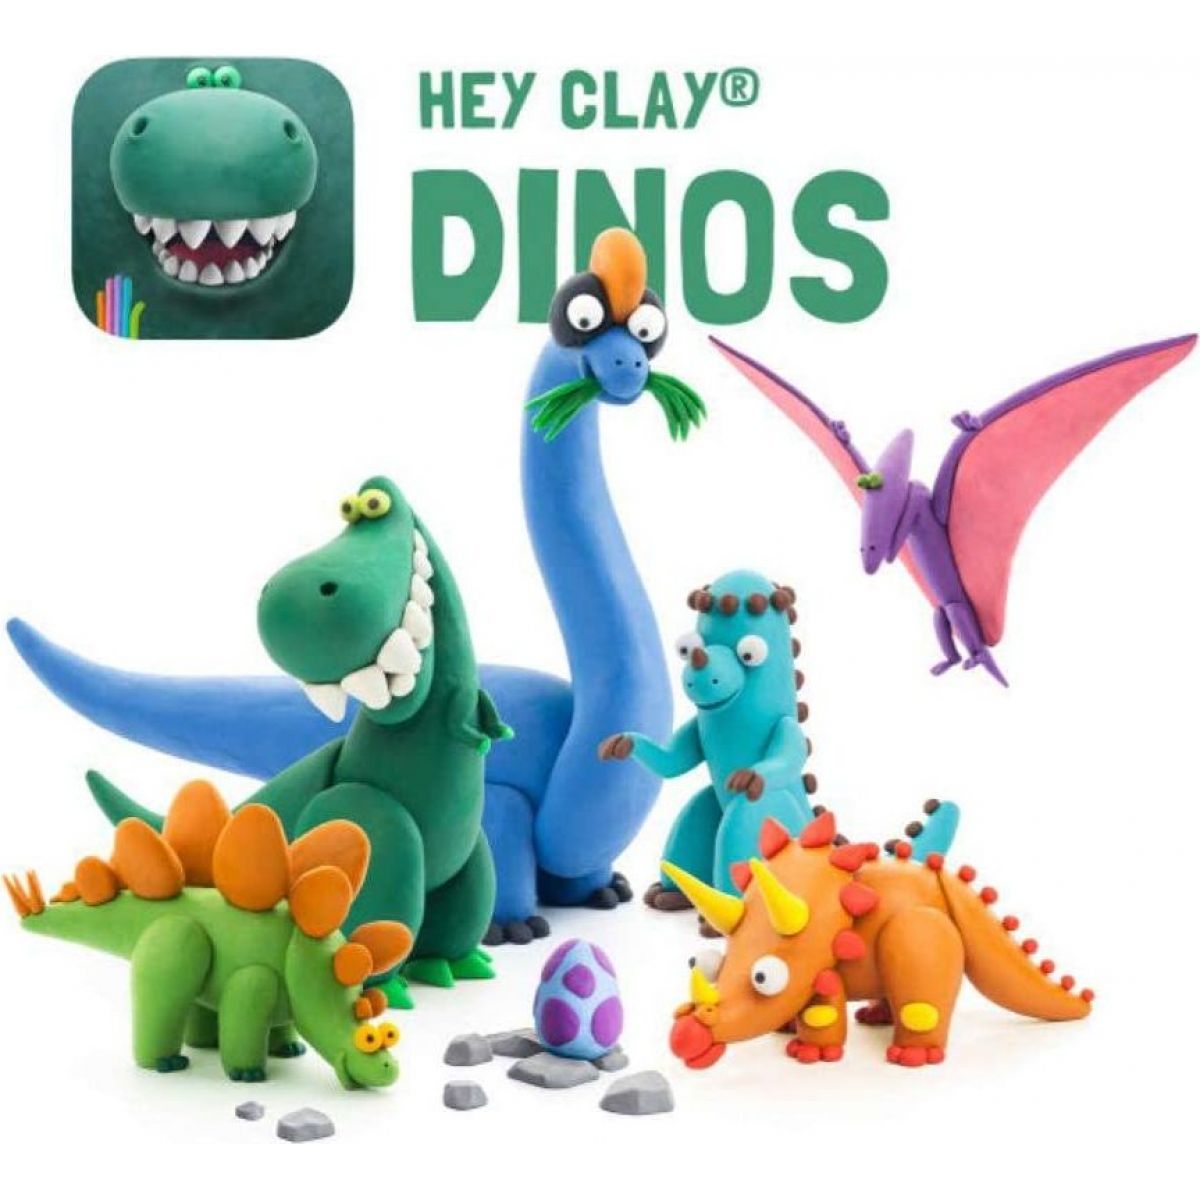 hey-clay-model-na-dinosau-i-4kids-cz